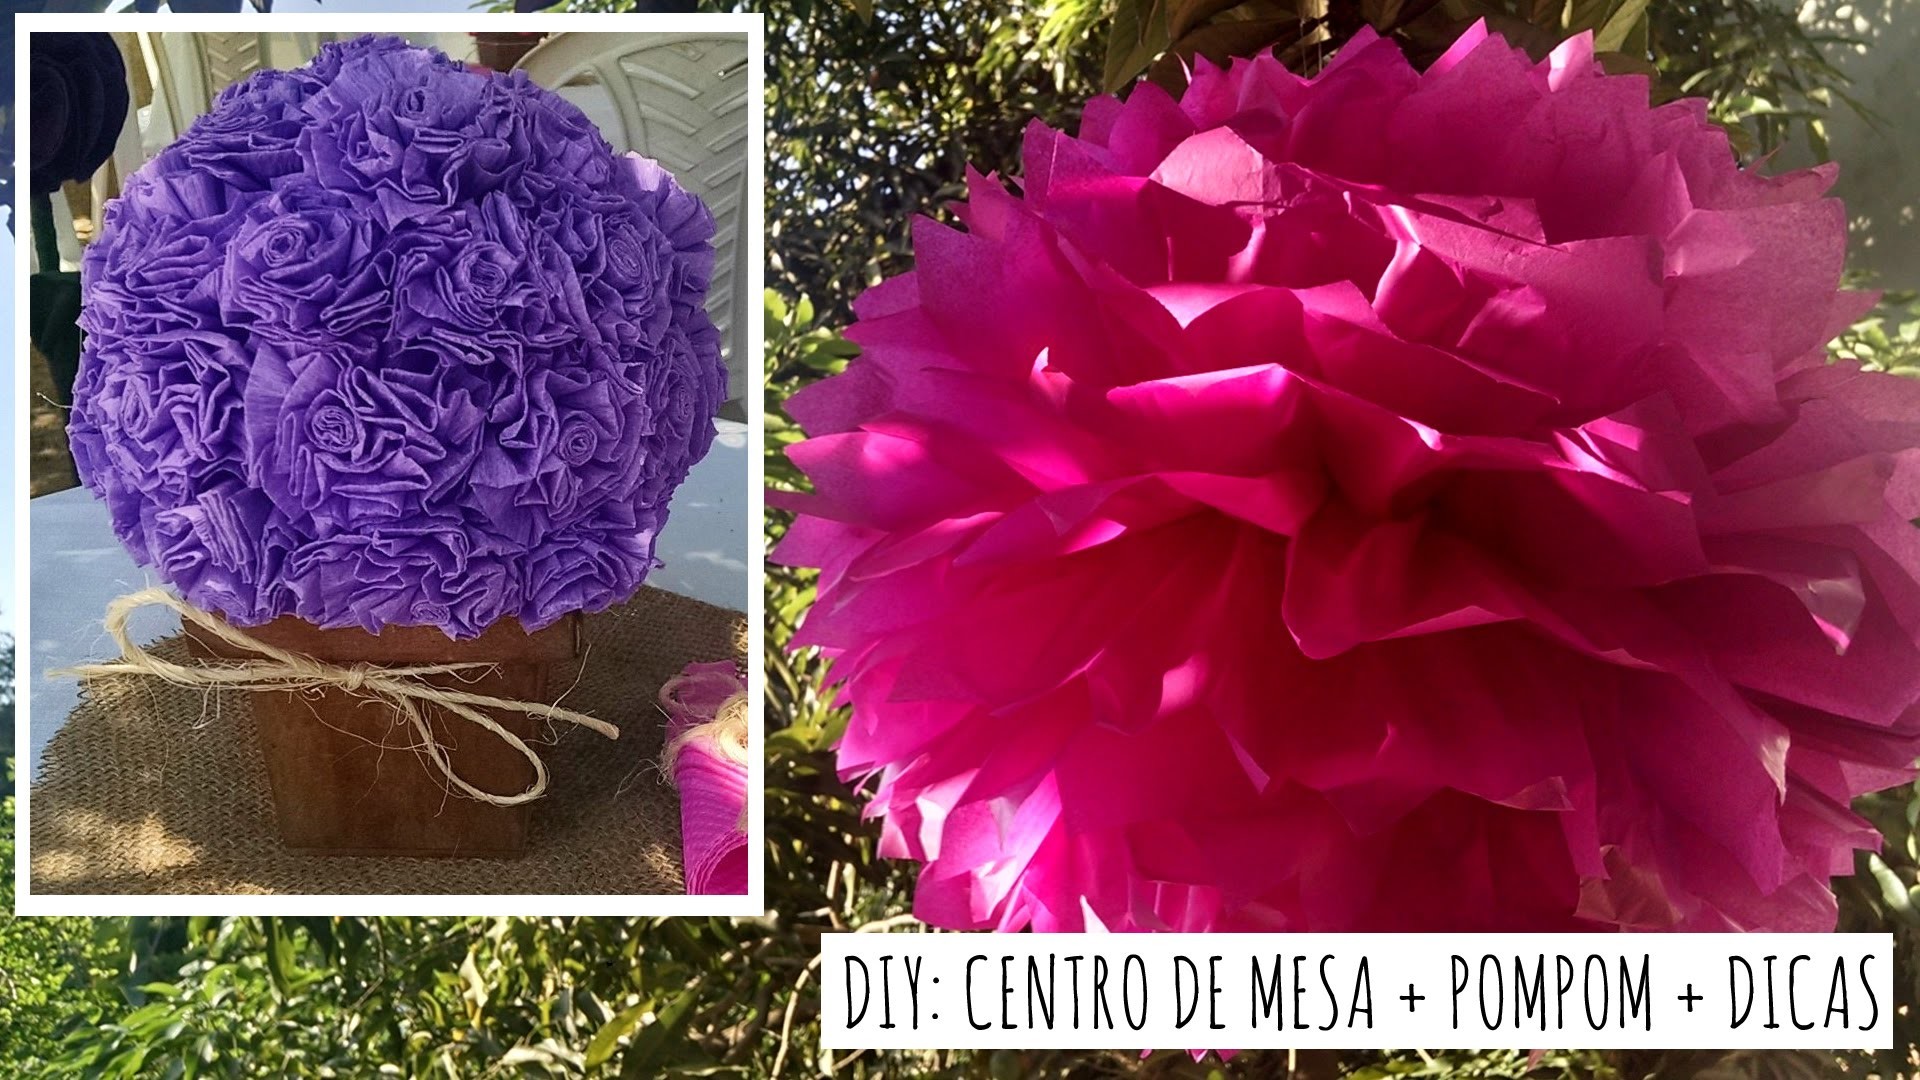 DIY: Bola de Flores + Pompom + Dicas de decoração